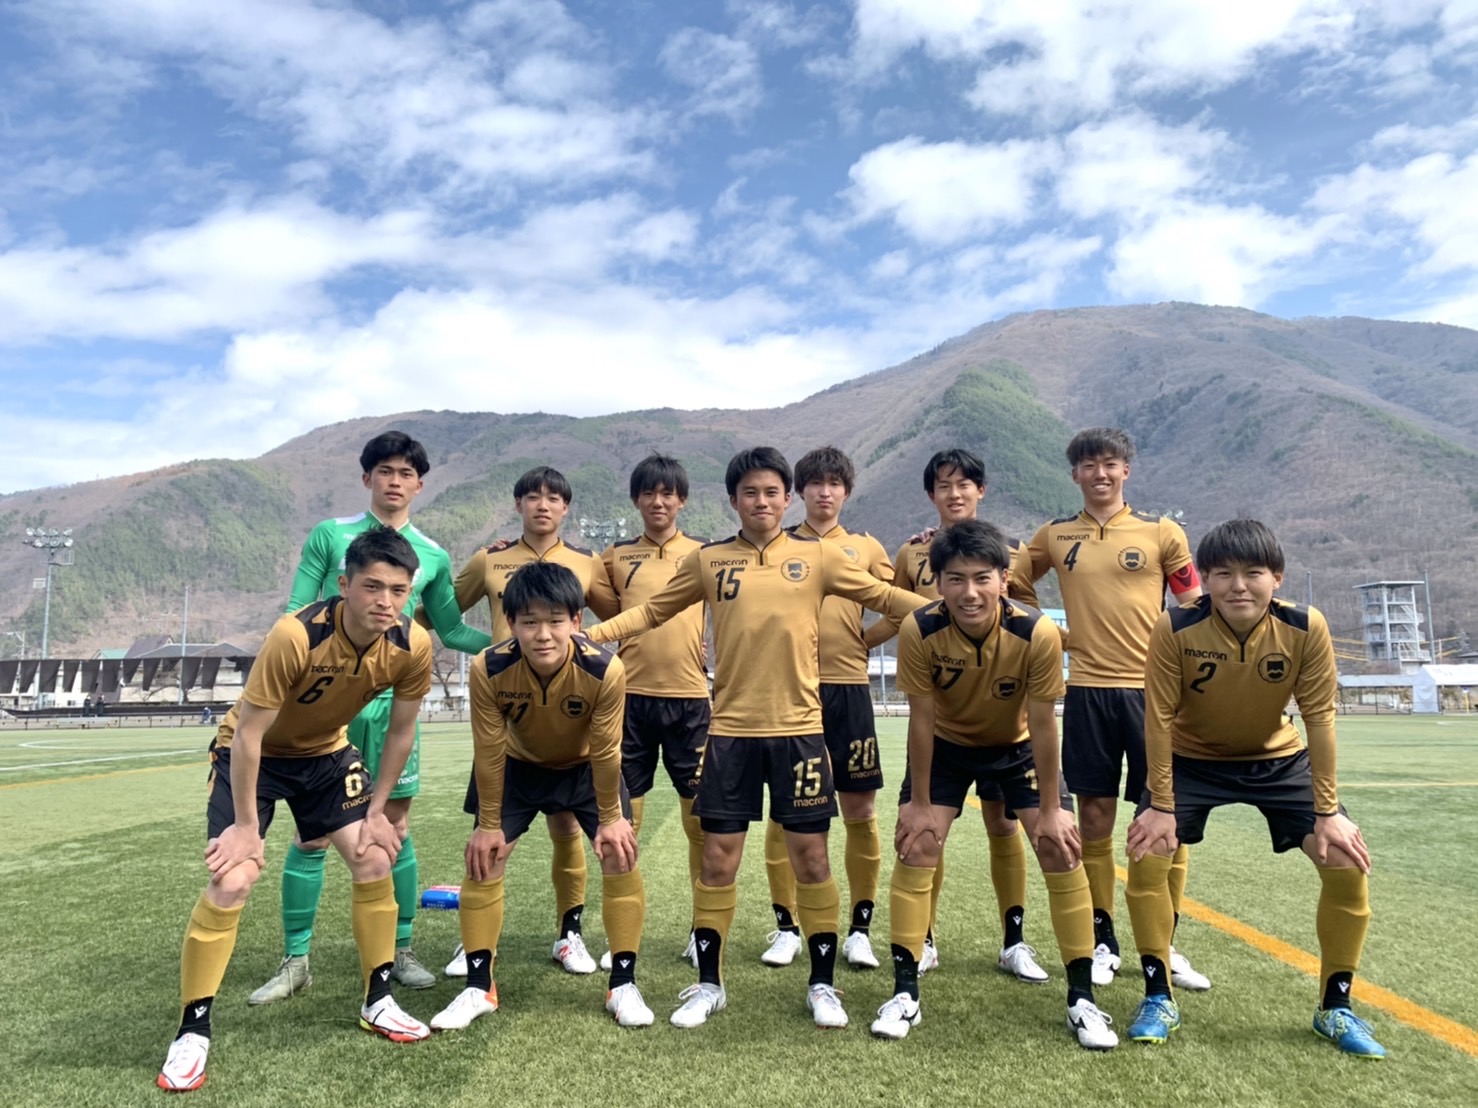 試合日程 結果 松本大学fc 松本大学サッカー部 公式ホームページ